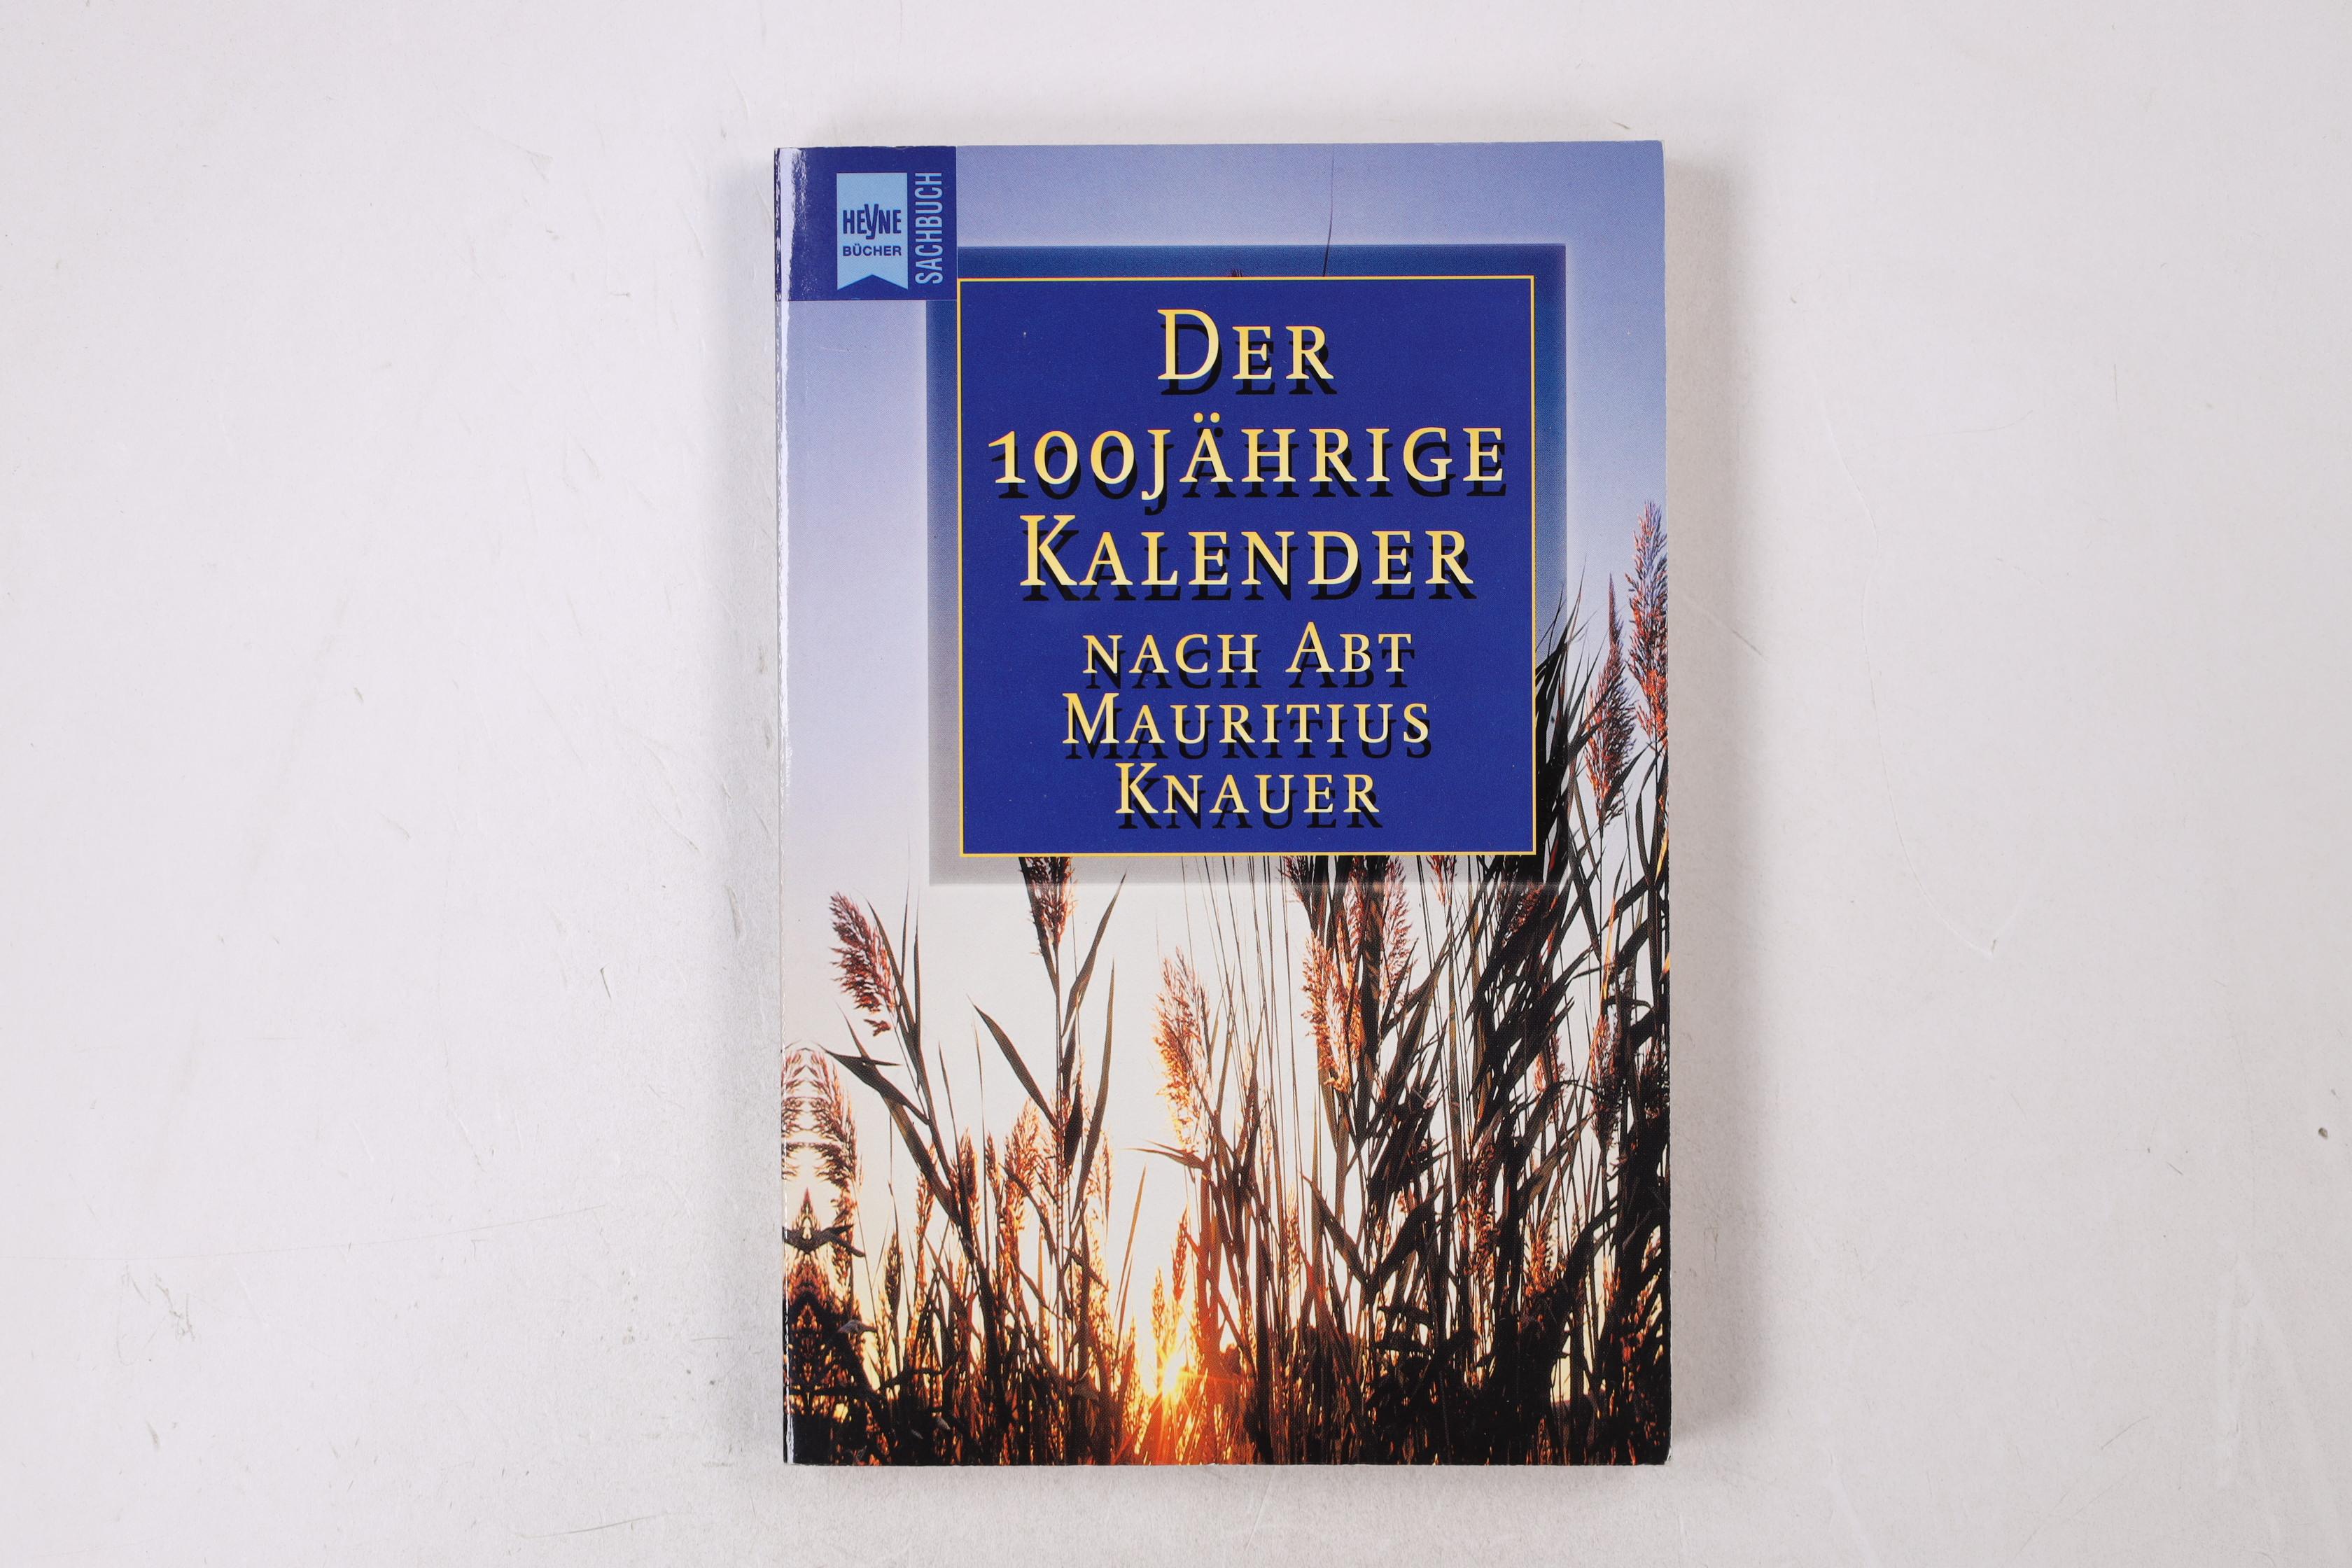 DER 100JÄHRIGE KALENDER. nach Abt Mauritius Knauer - Allgeier, Kurt